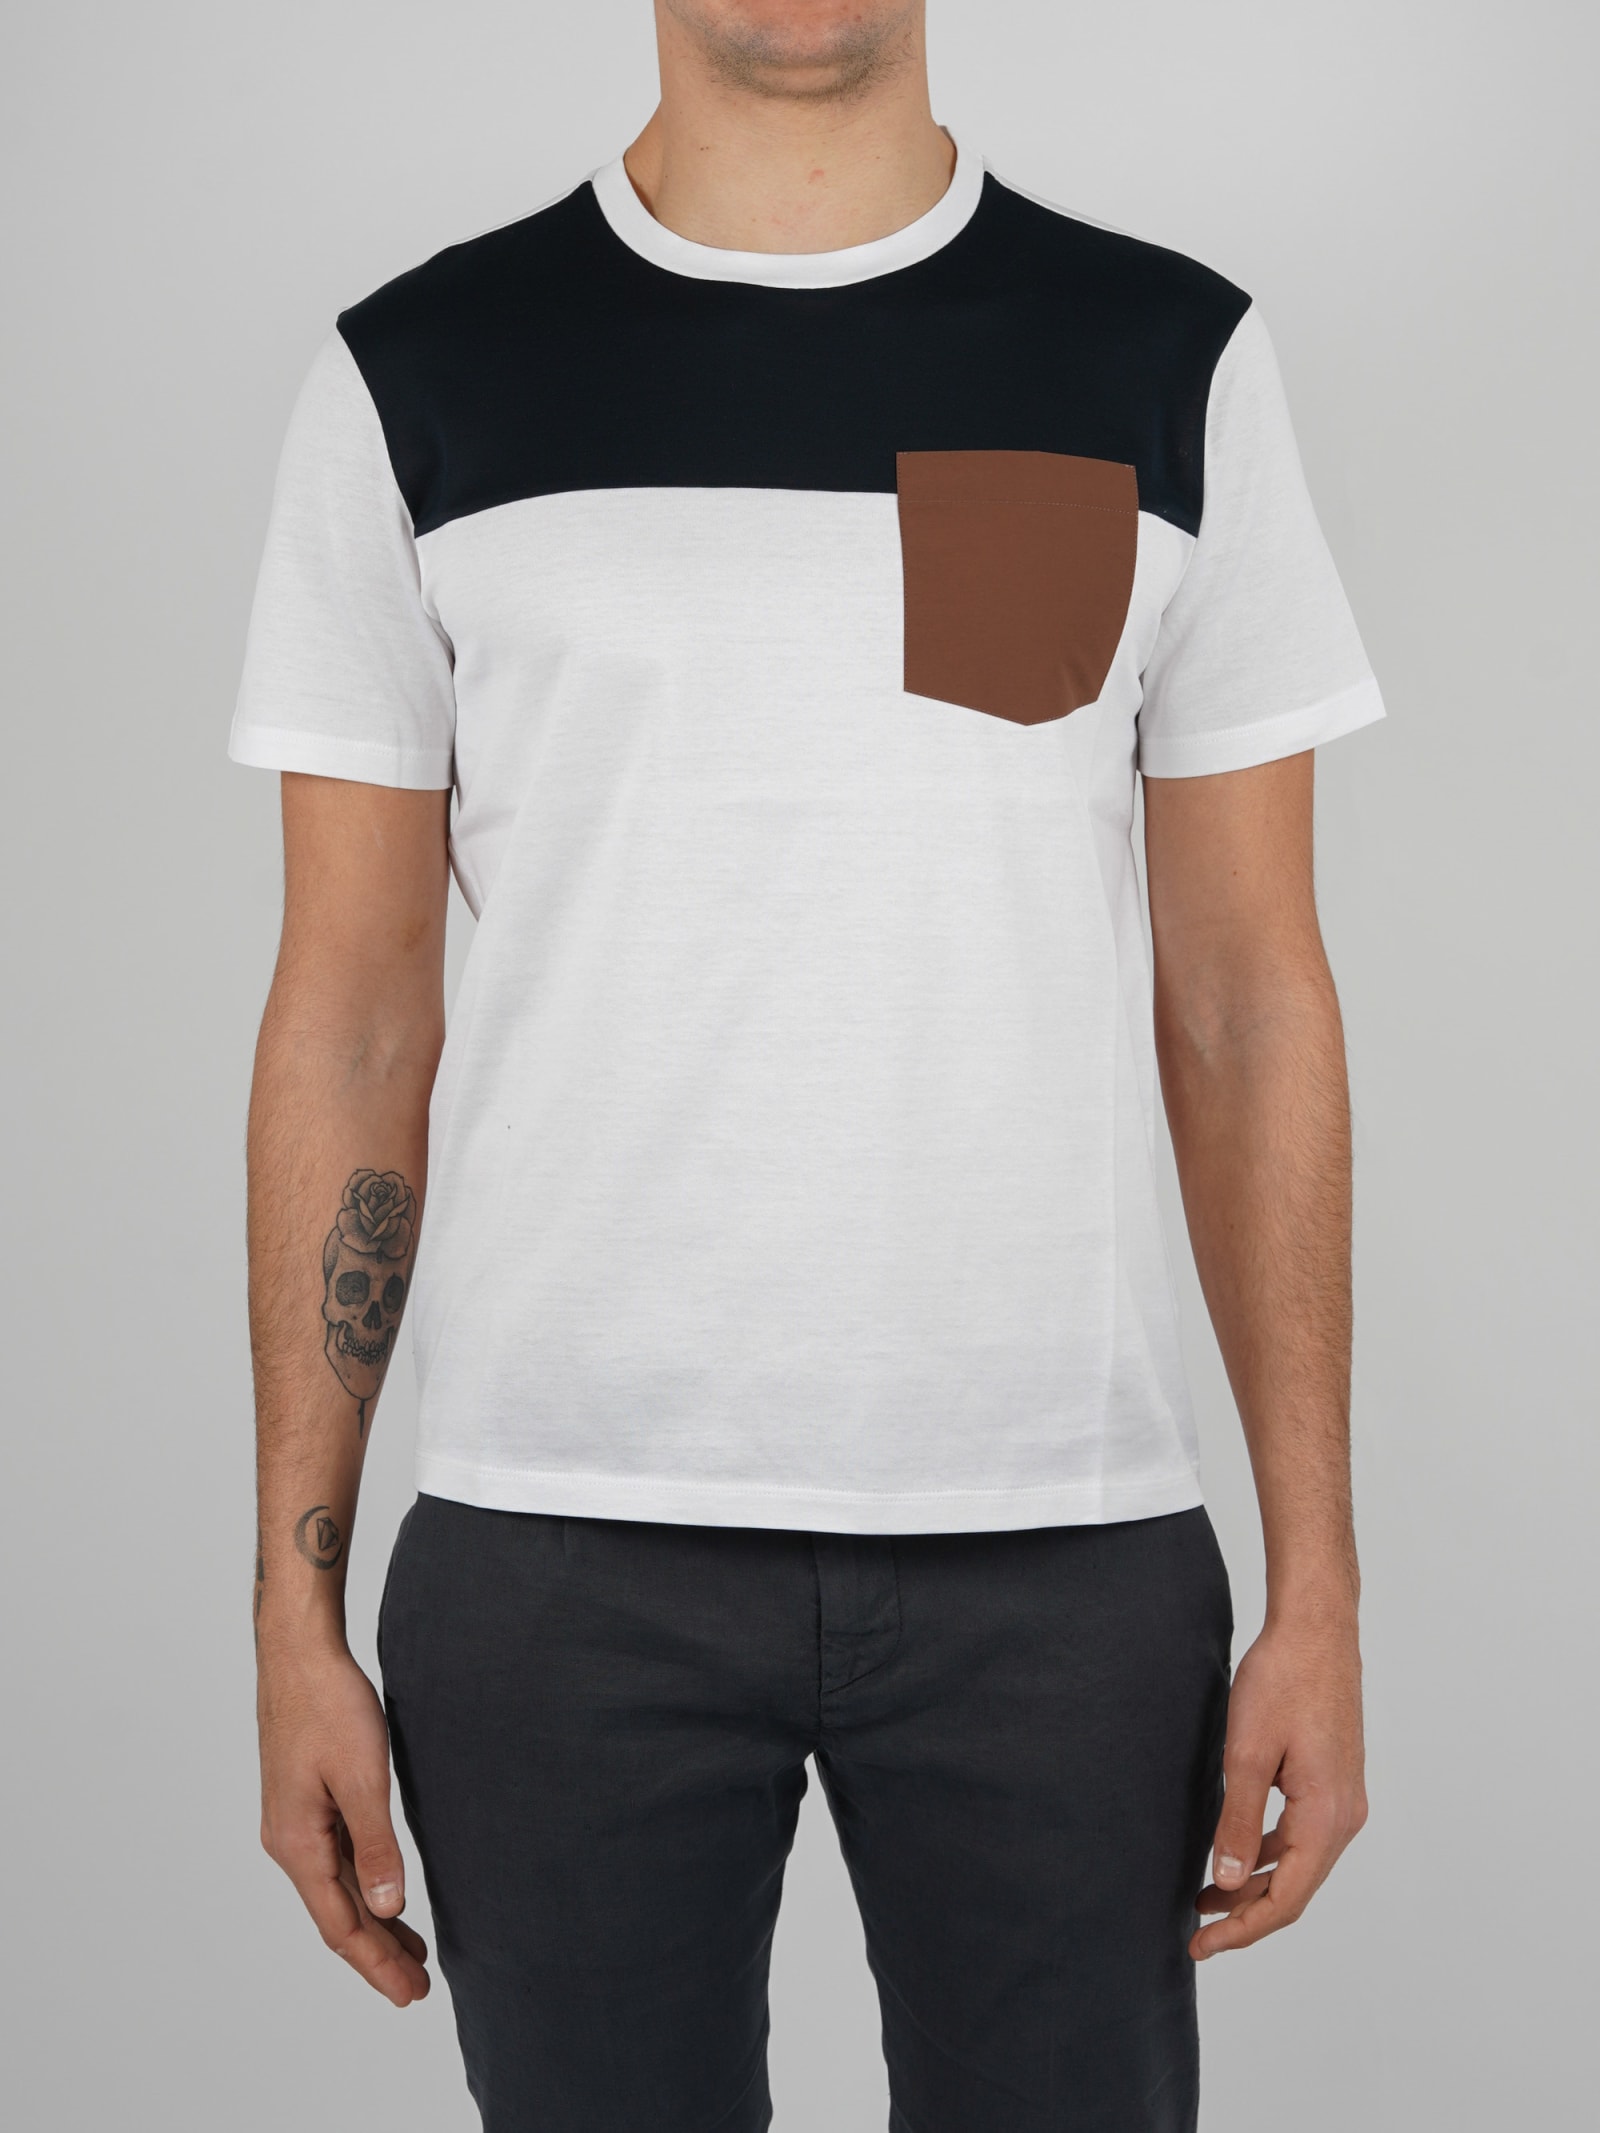 Herno Tshirt Superfine Cotton Jersey T-shirt